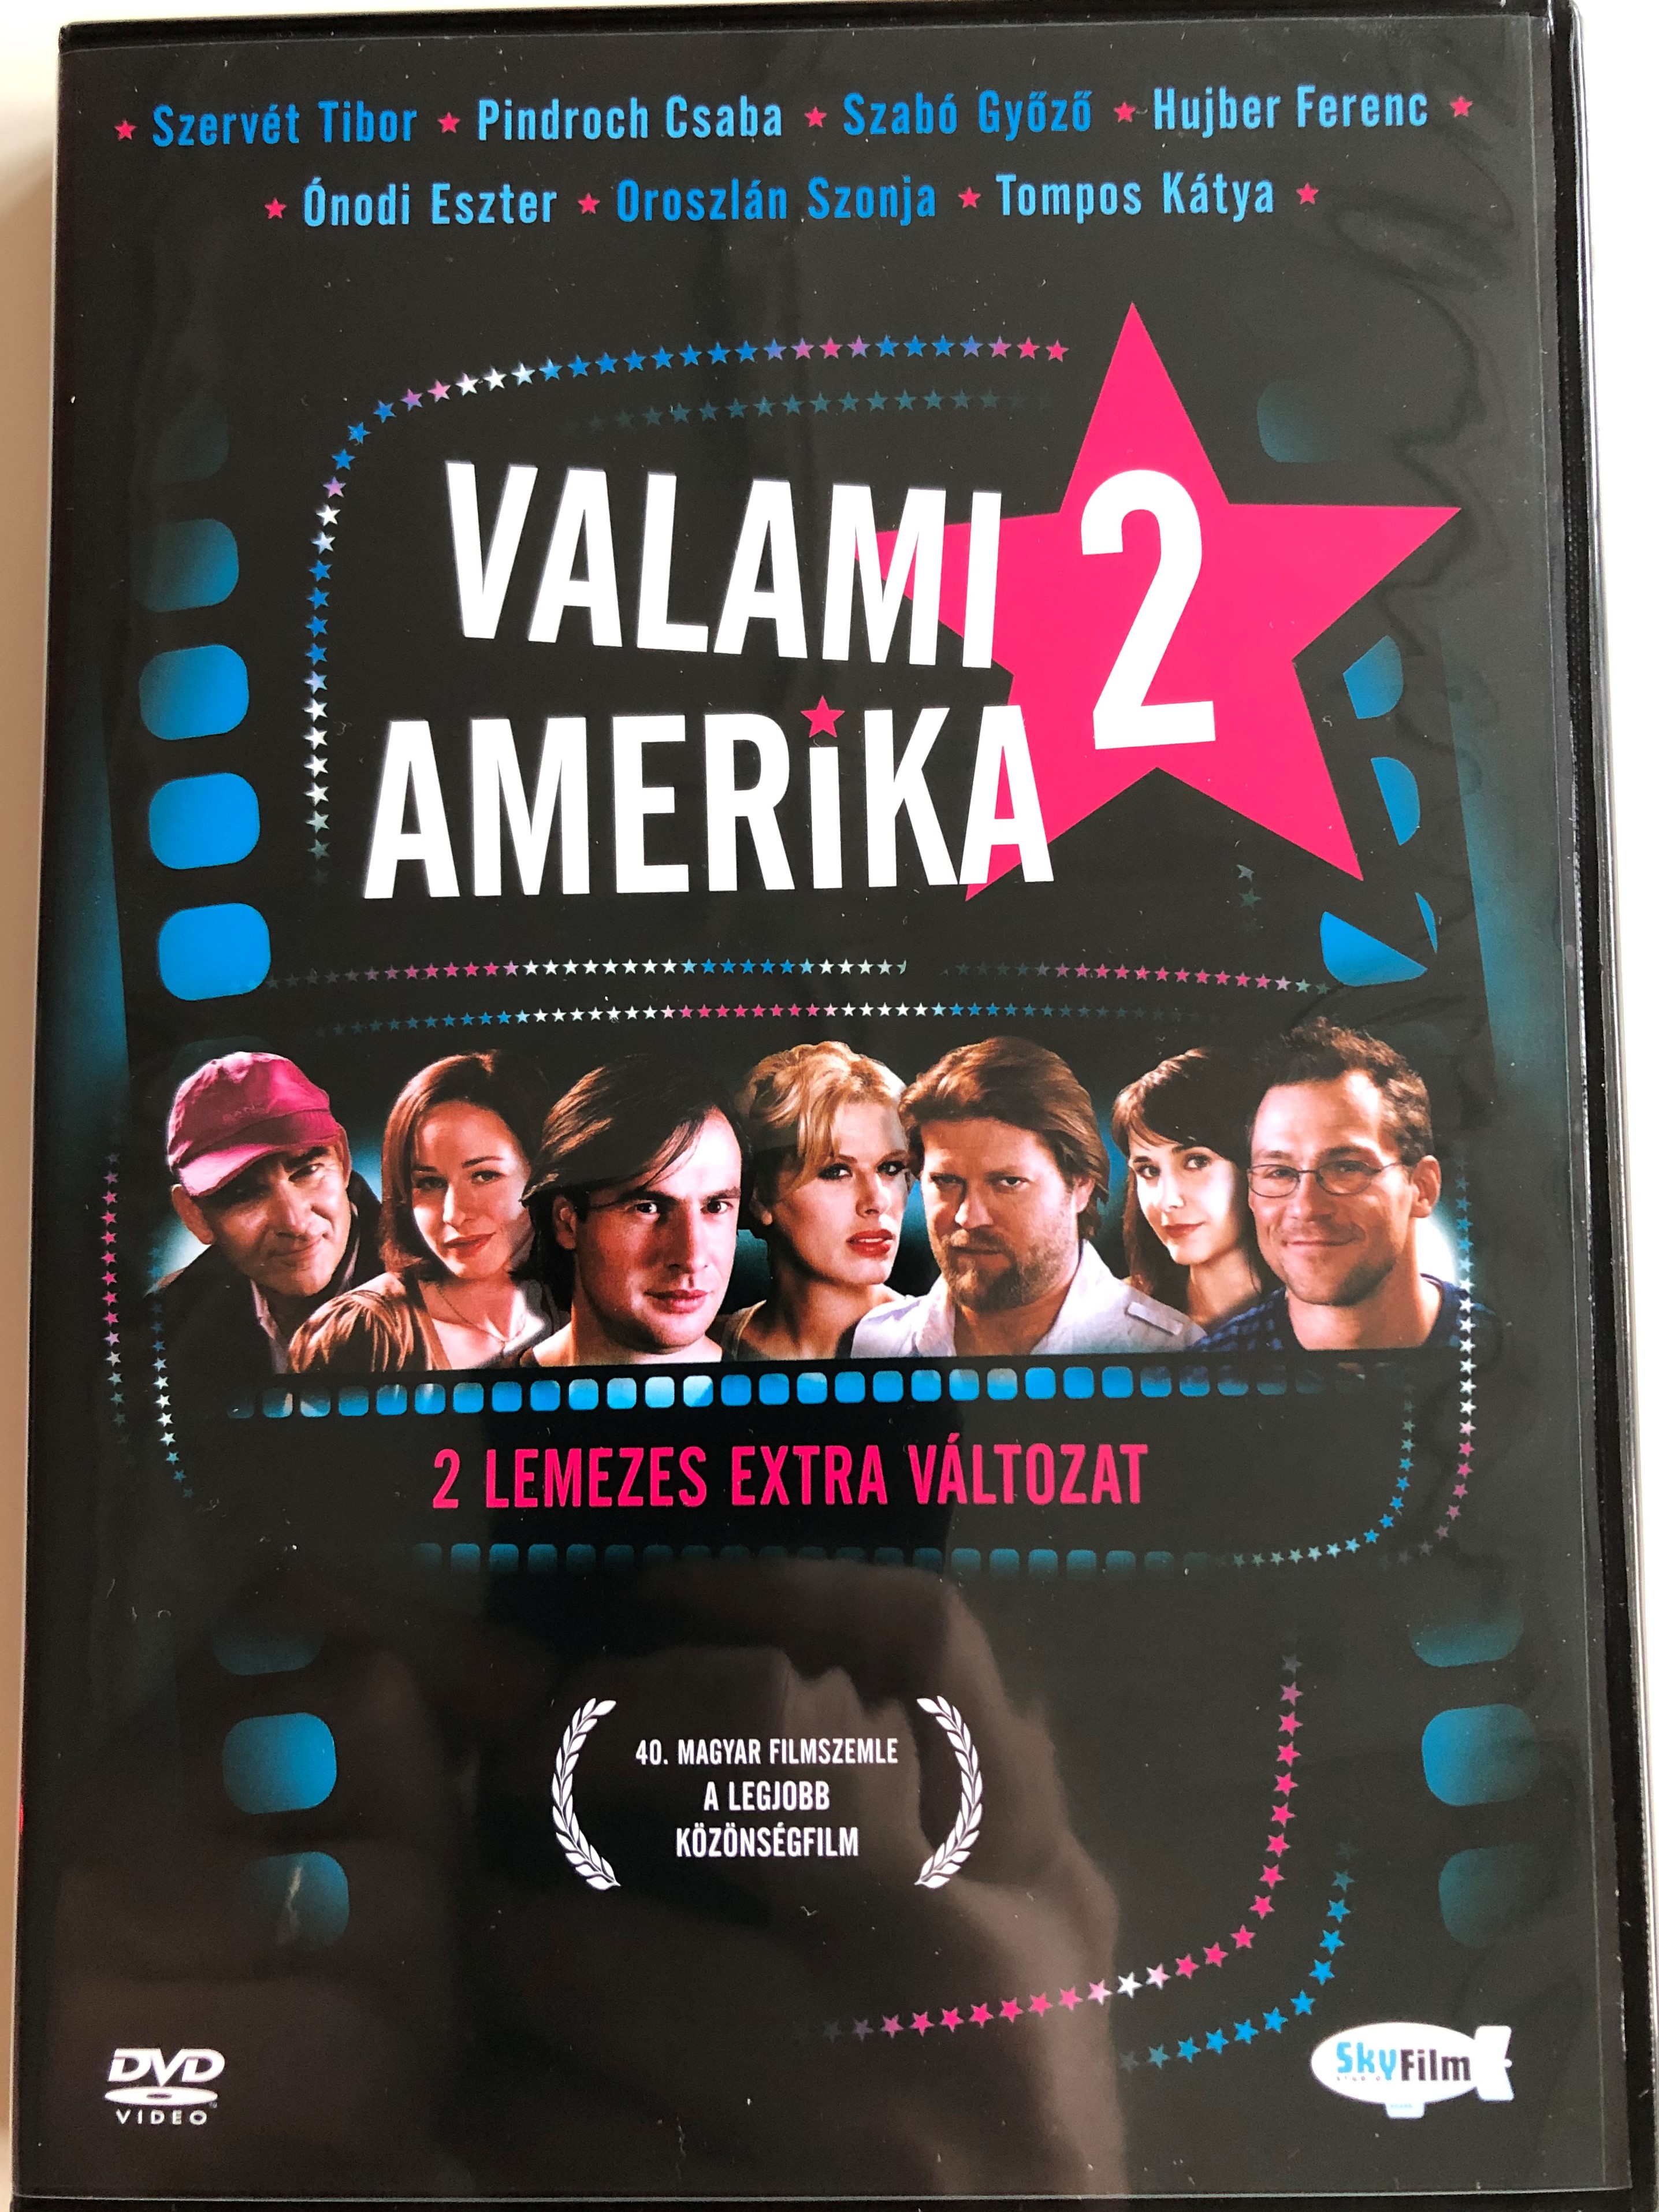 valami-amerika-2-dvd-2008-directed-by-herendi-g-bor-starring-pindroch-csaba-szab-gy-z-hujber-ferenc-szerv-t-tibor-nodi-eszter-oroszl-n-szonja-tompos-k-tya-csuja-imre-with-extra-disc-1-.jpg